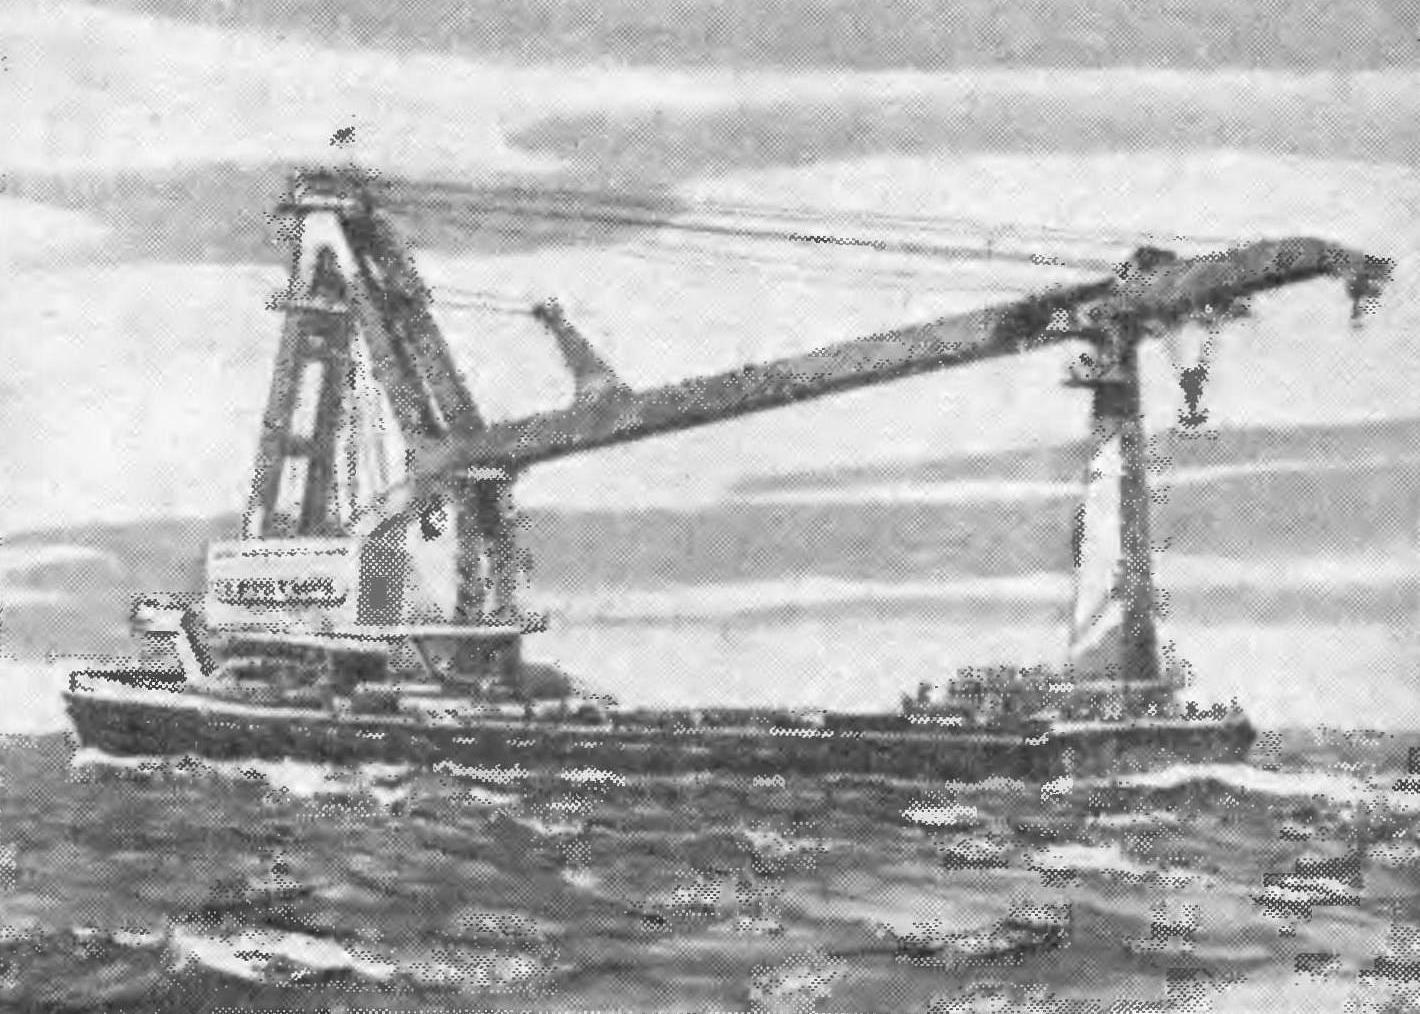 Fig. 1. Floating crane 